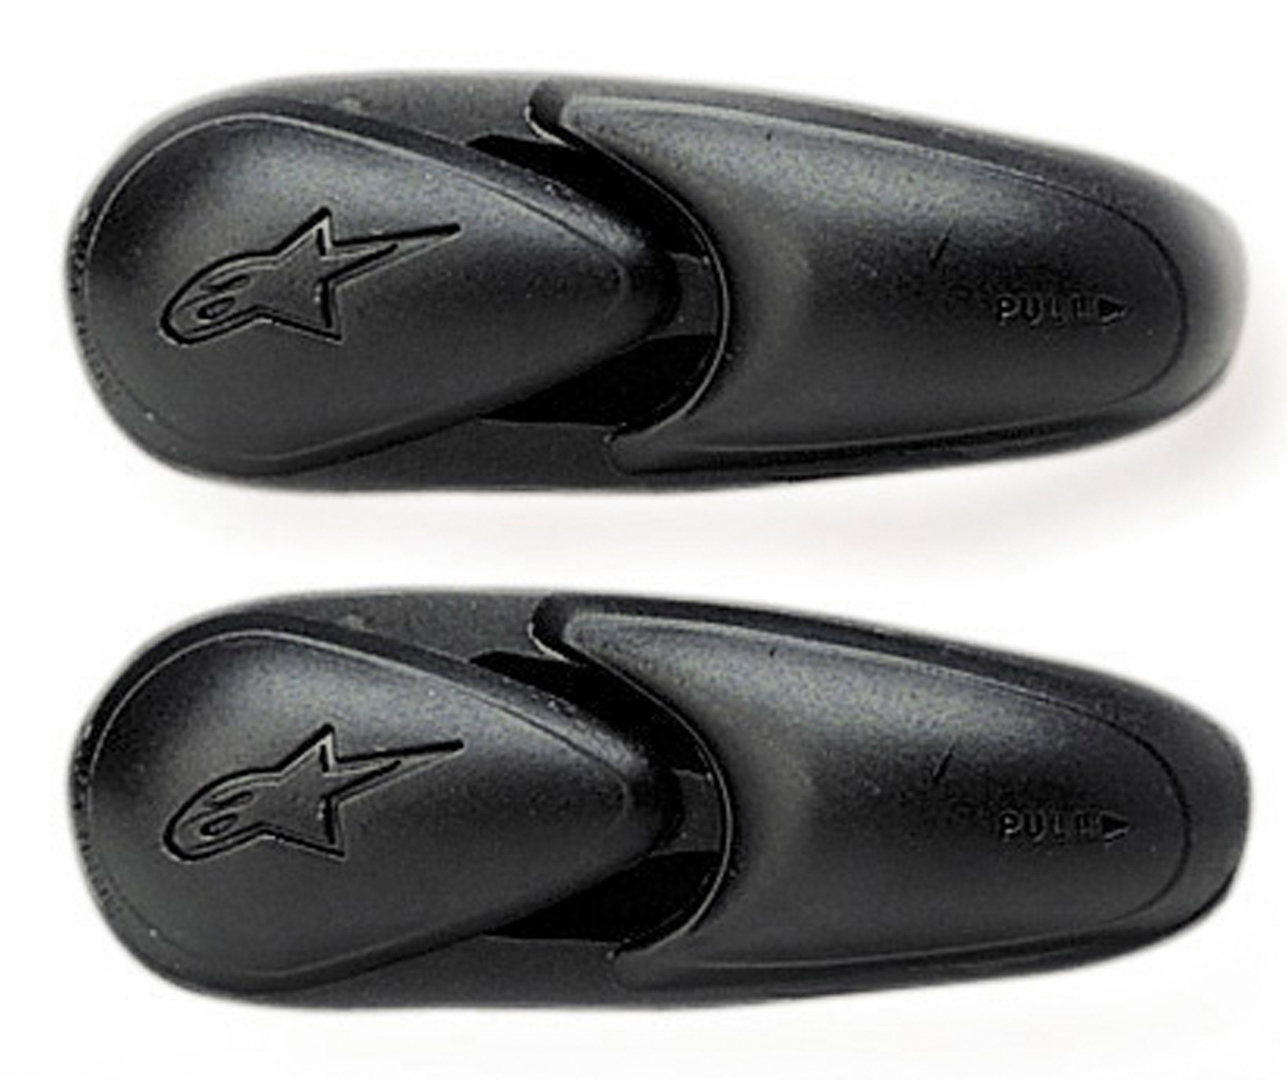 Защита Alpinestars Super/SMX-3 для пальцев ног